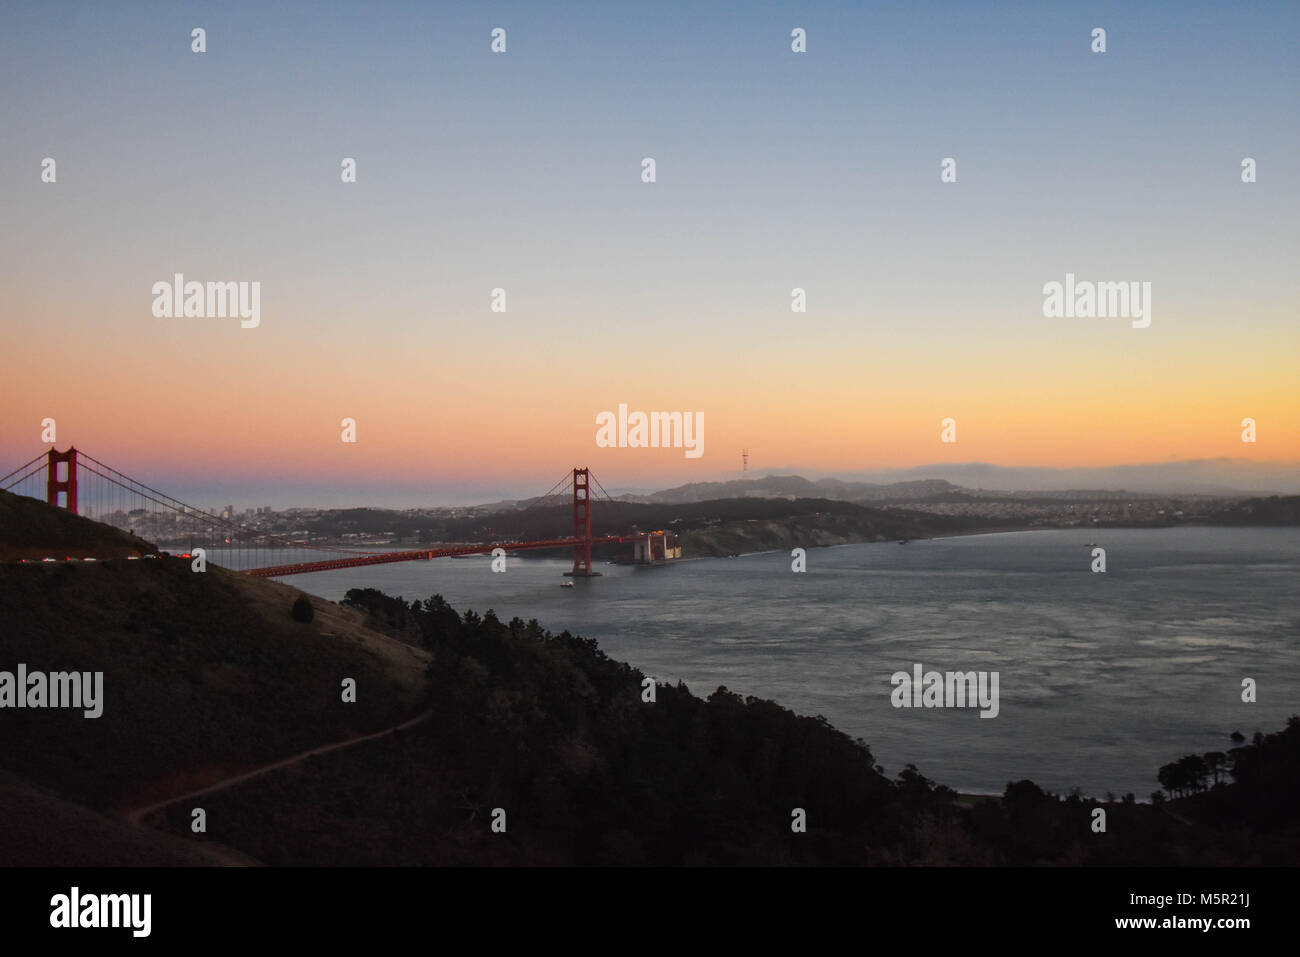 Una splendida Bay Area tramonto mette in evidenza la bellezza del Golden Gate e il San Francisco cityscape. Foto Stock